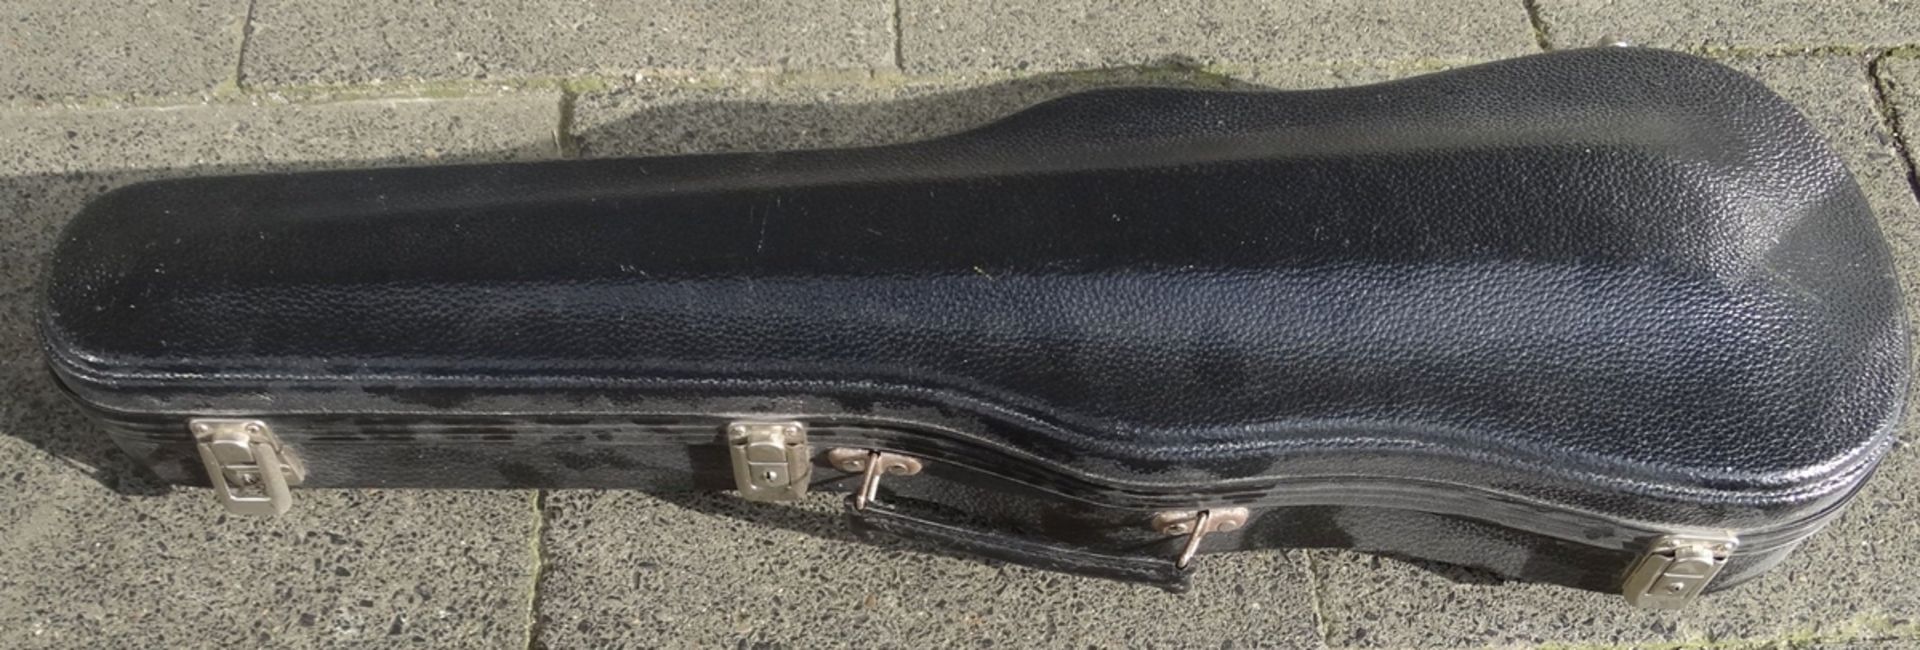 alte Geige in Koffer, guter Zustand, mit Bogen, Geige L-60 cm, - Bild 2 aus 7